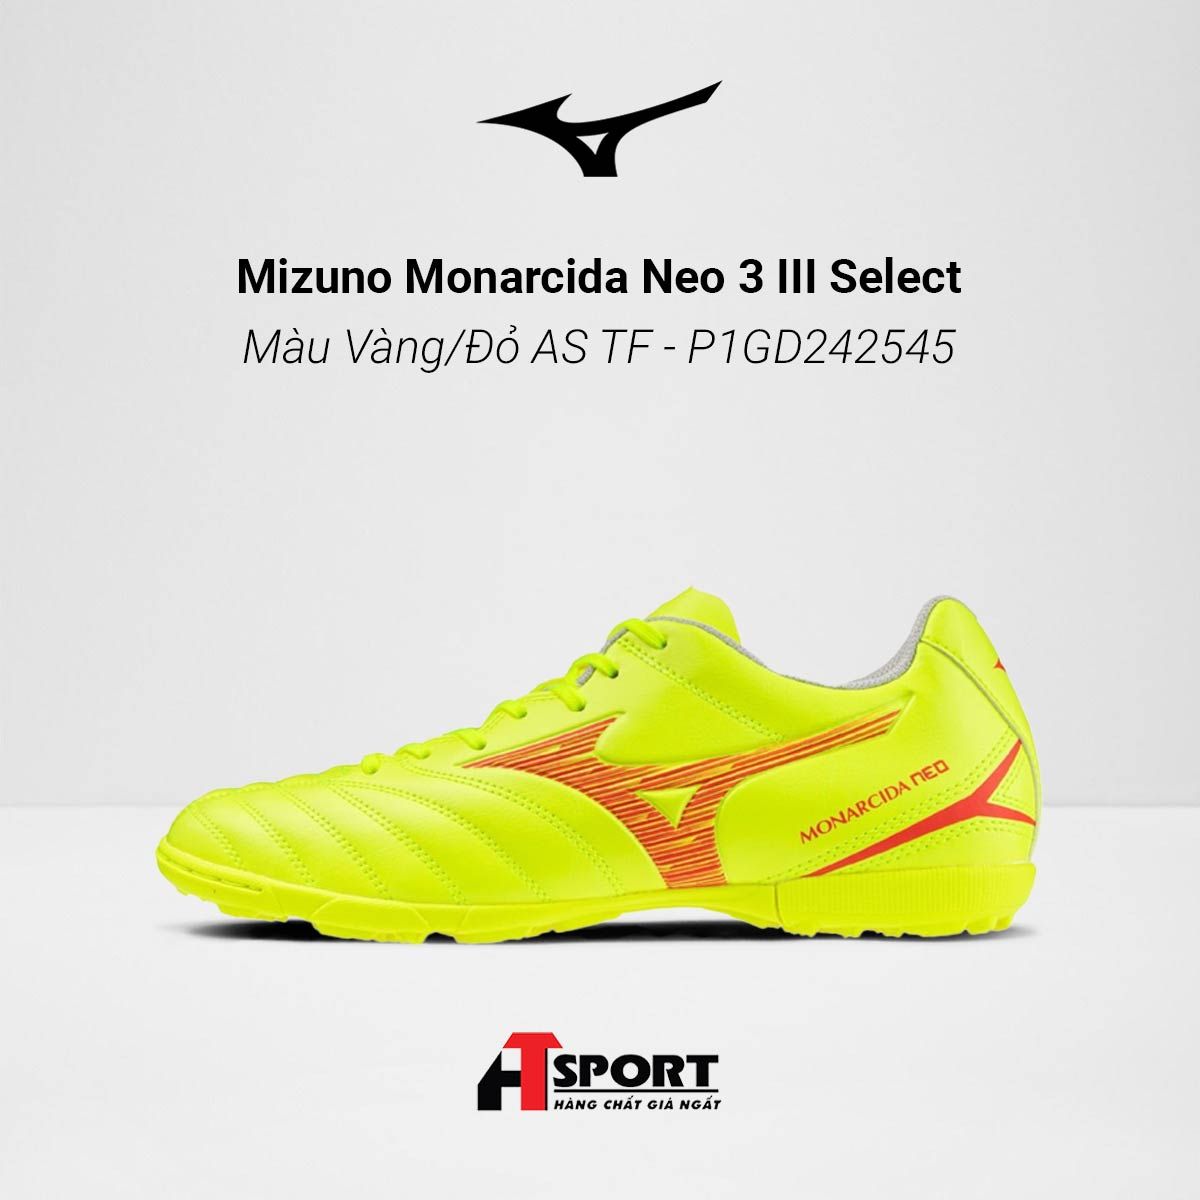  Mizuno Monarcida Neo 3 III Select Màu Vàng/Đỏ AS TF - P1GD242545 